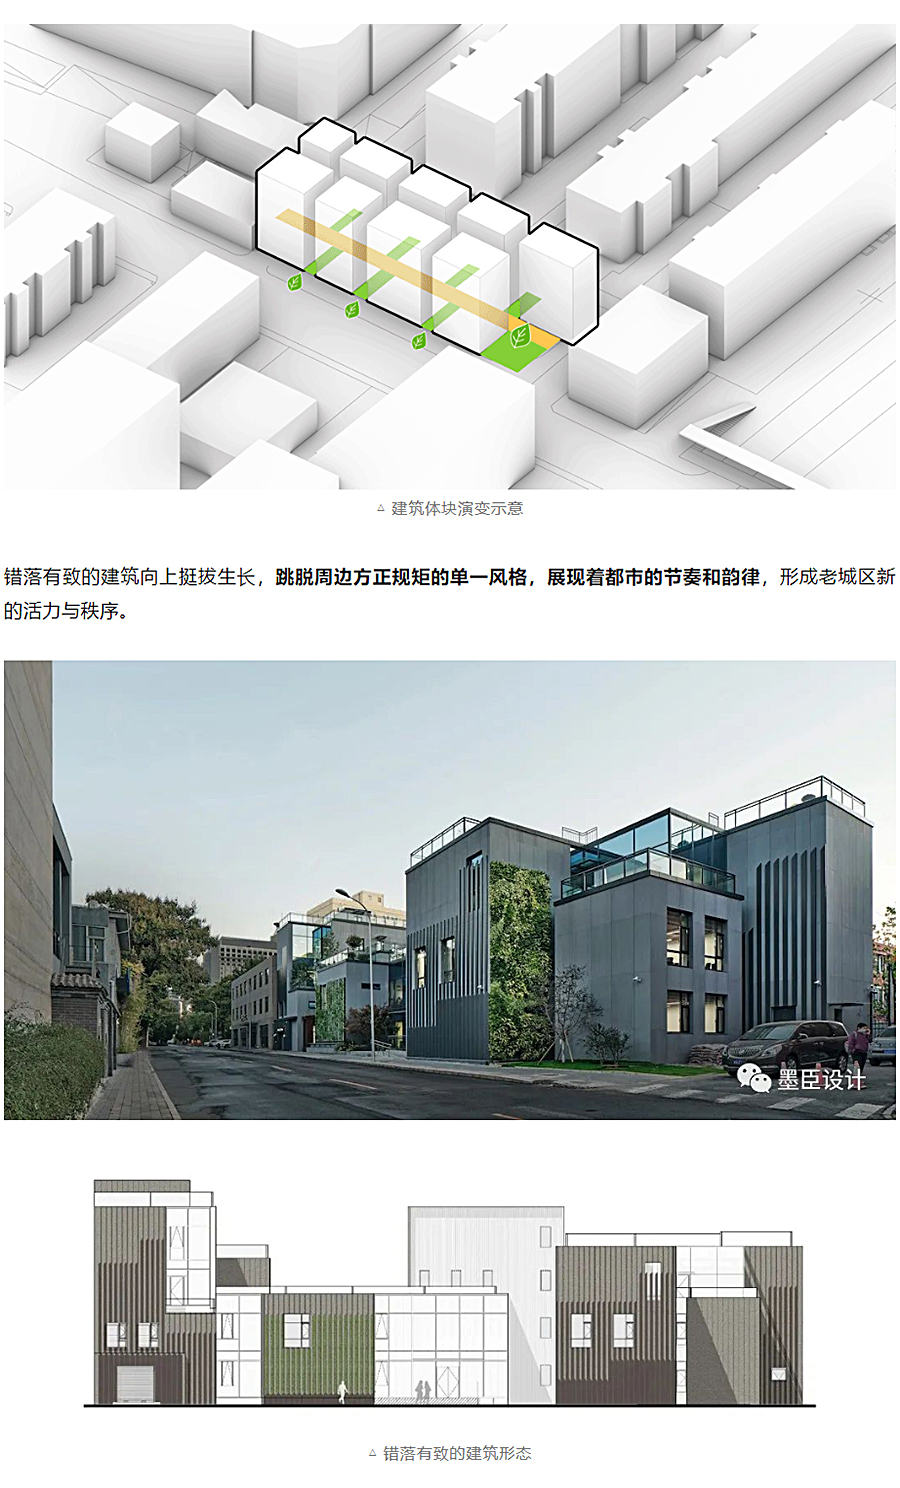 生态办公的游园序列-_-北京花木公司办公楼改造_0004_图层-5.jpg